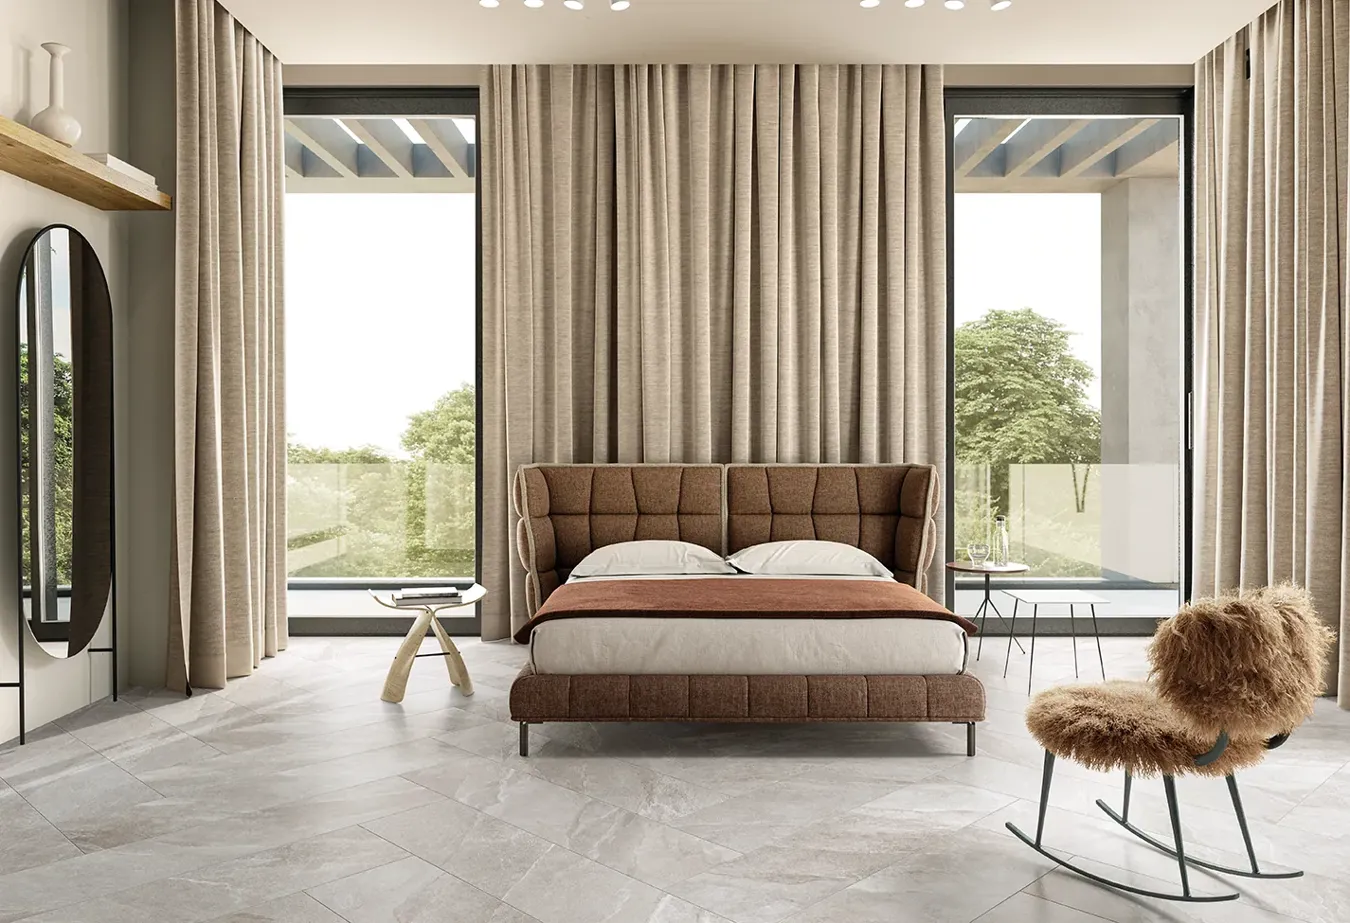 Camera da letto elegante con piastrelle effetto pietra greige della collezione Ubik, letto imbottito marrone e tende coordinate.